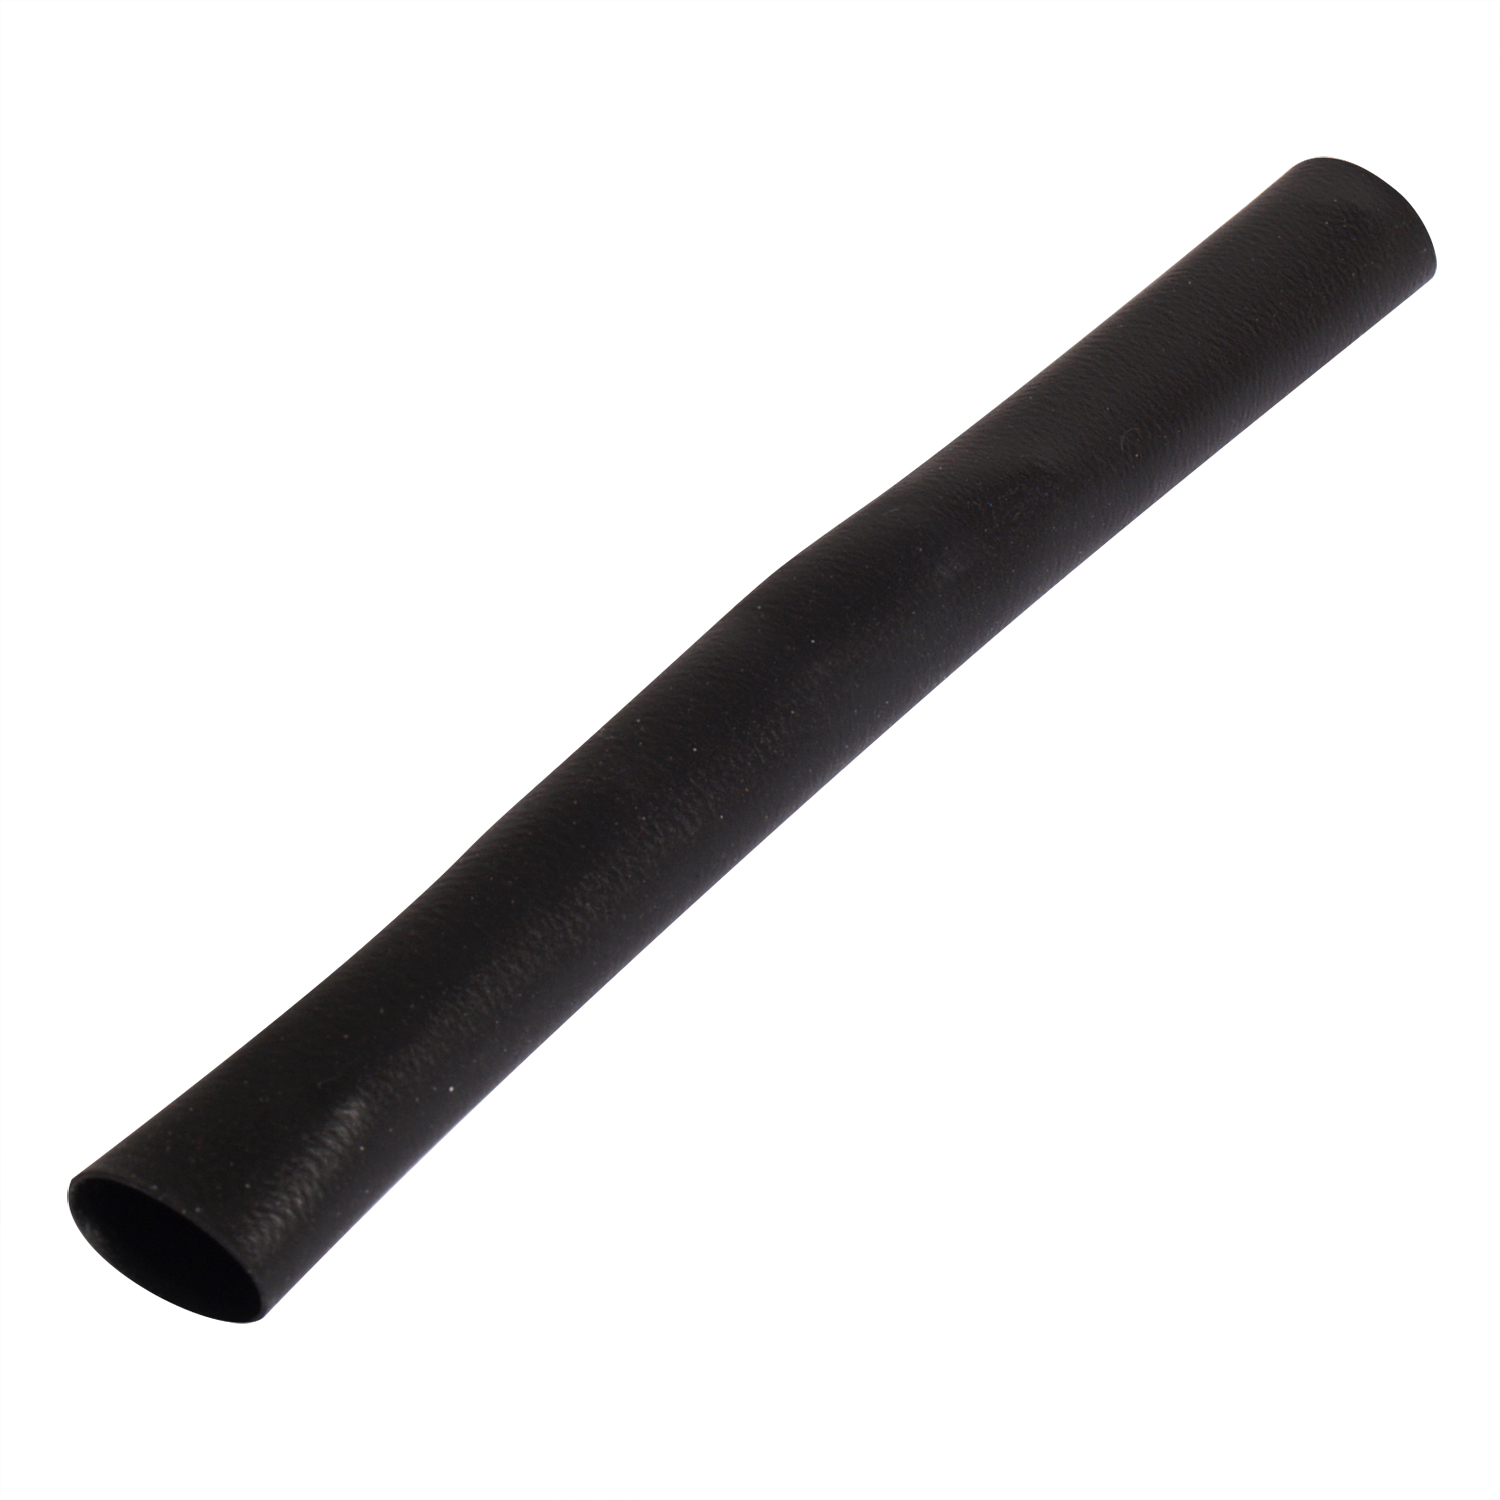 IBS cue handle silicone black 30 cm